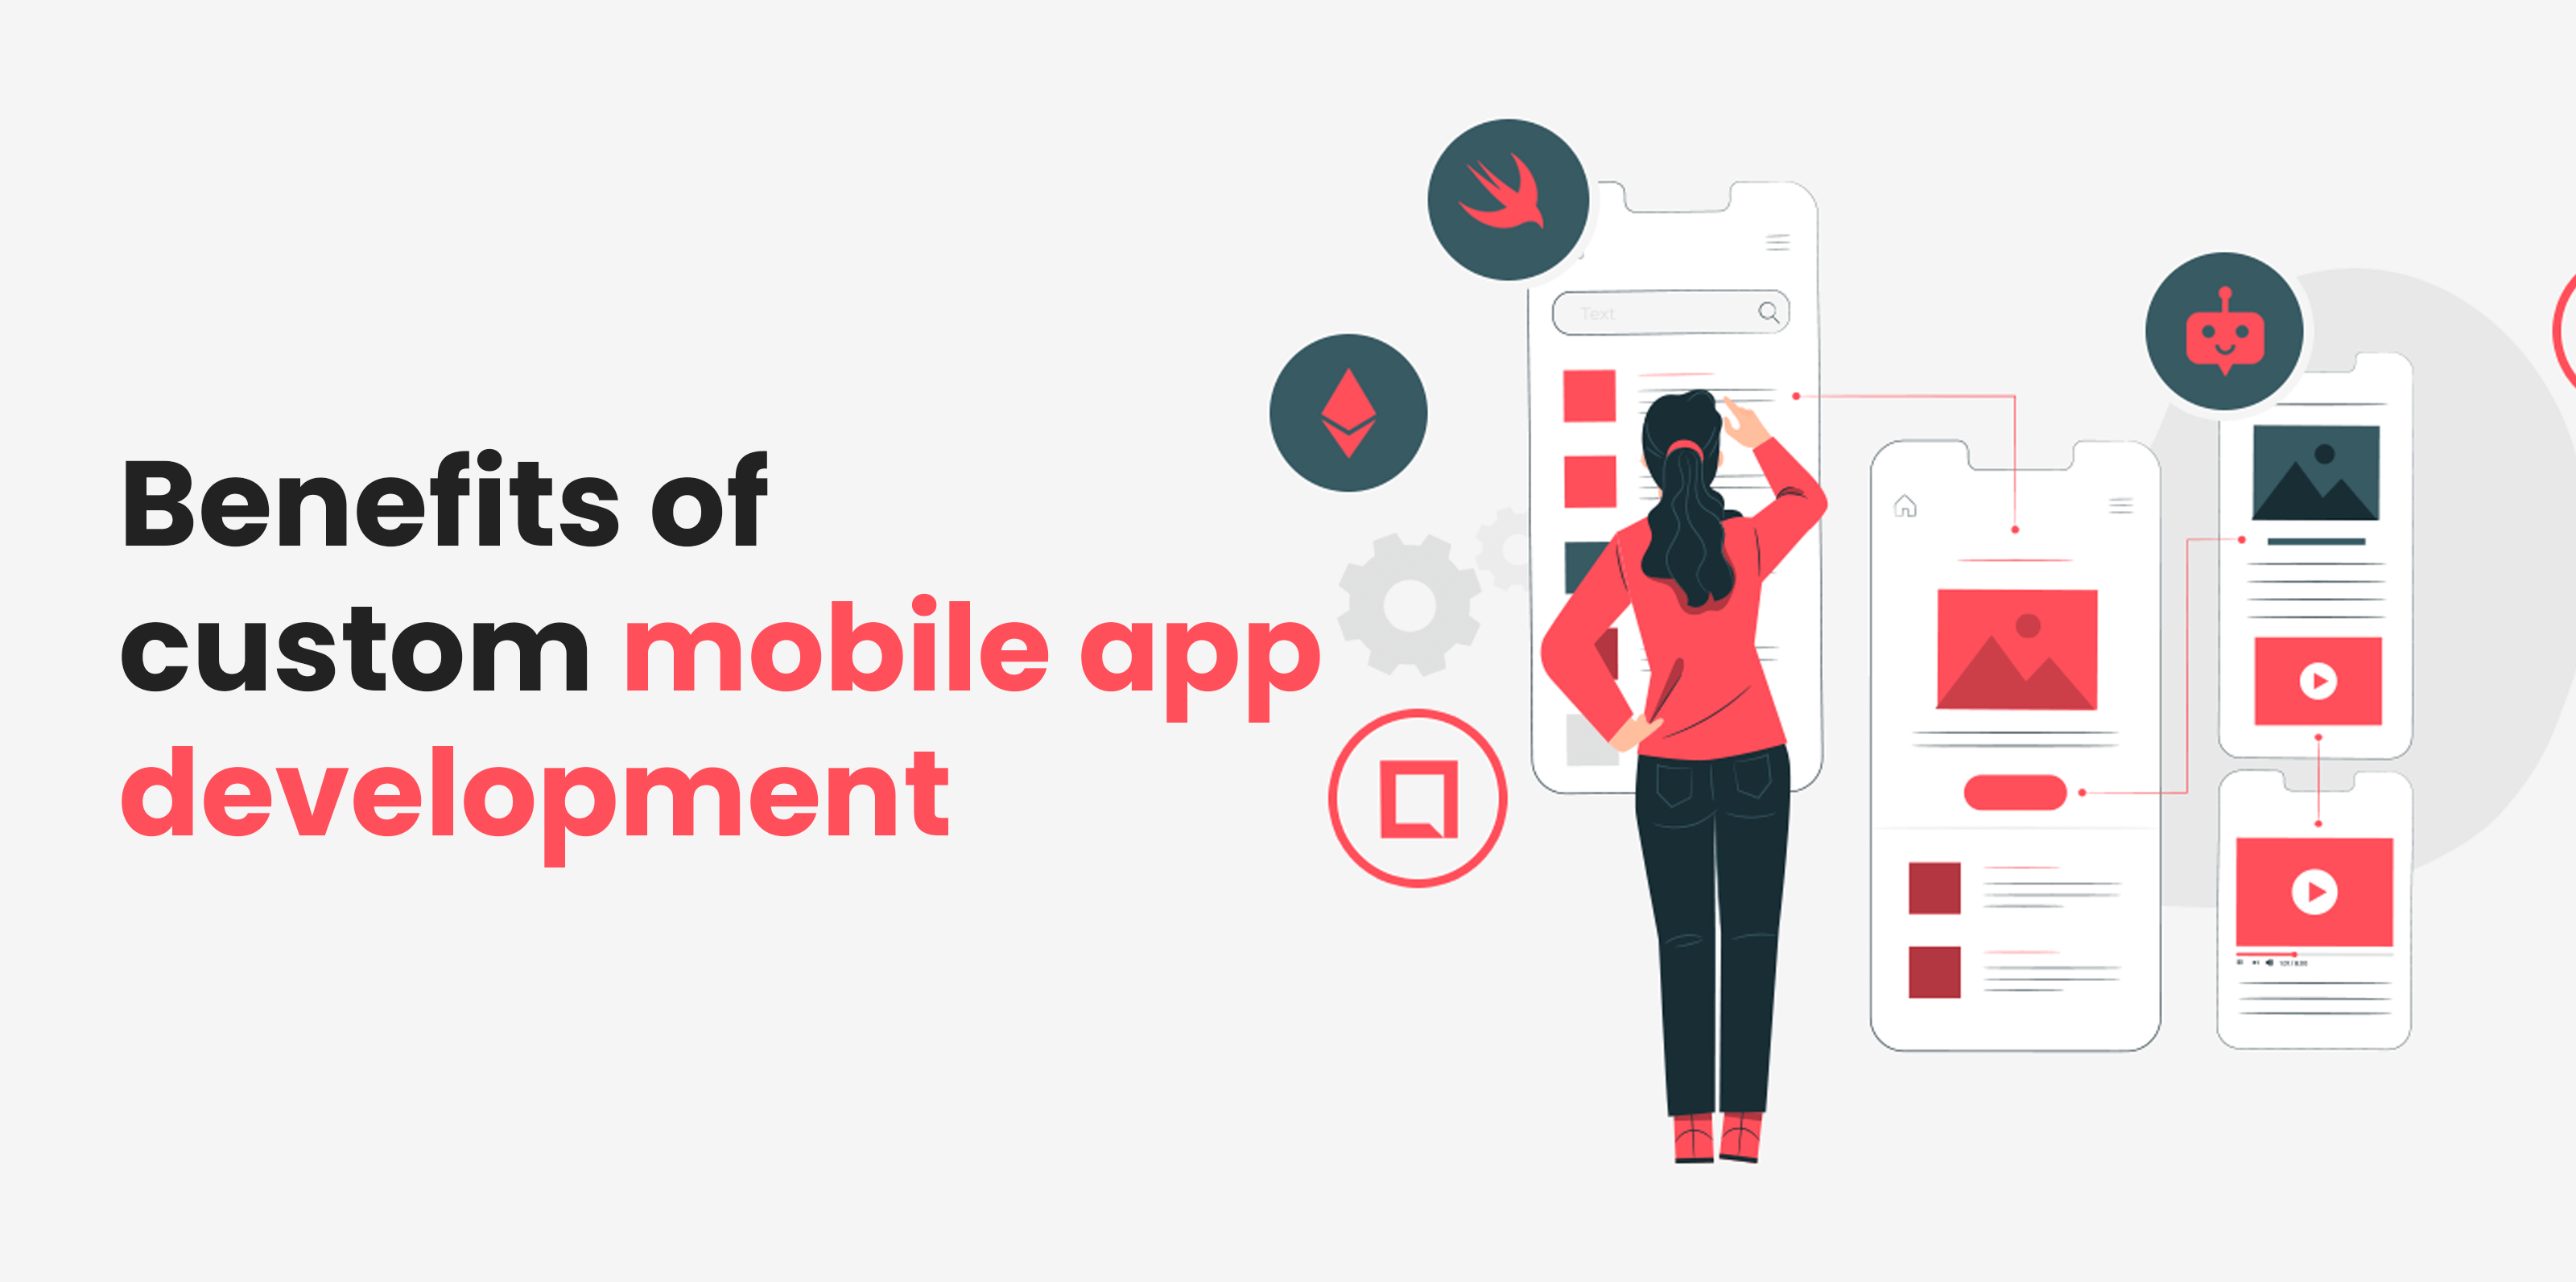 Foardielen fan Untwikkeling fan oanpaste mobile app